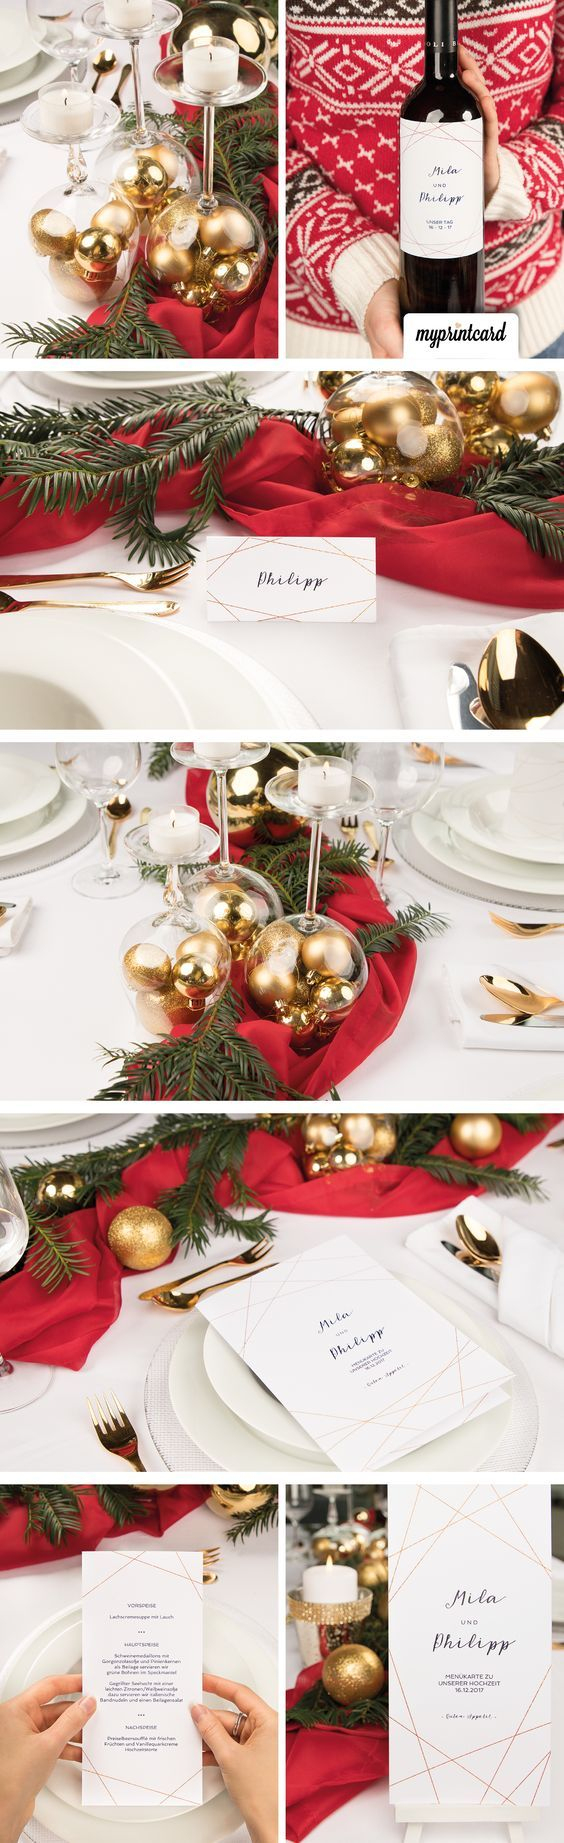 Schnelle Tischdeko Zu Weihnachten In Rot Und Gold (Mit ganzes Ideen Für Weihnachtstischdeko Anleitung